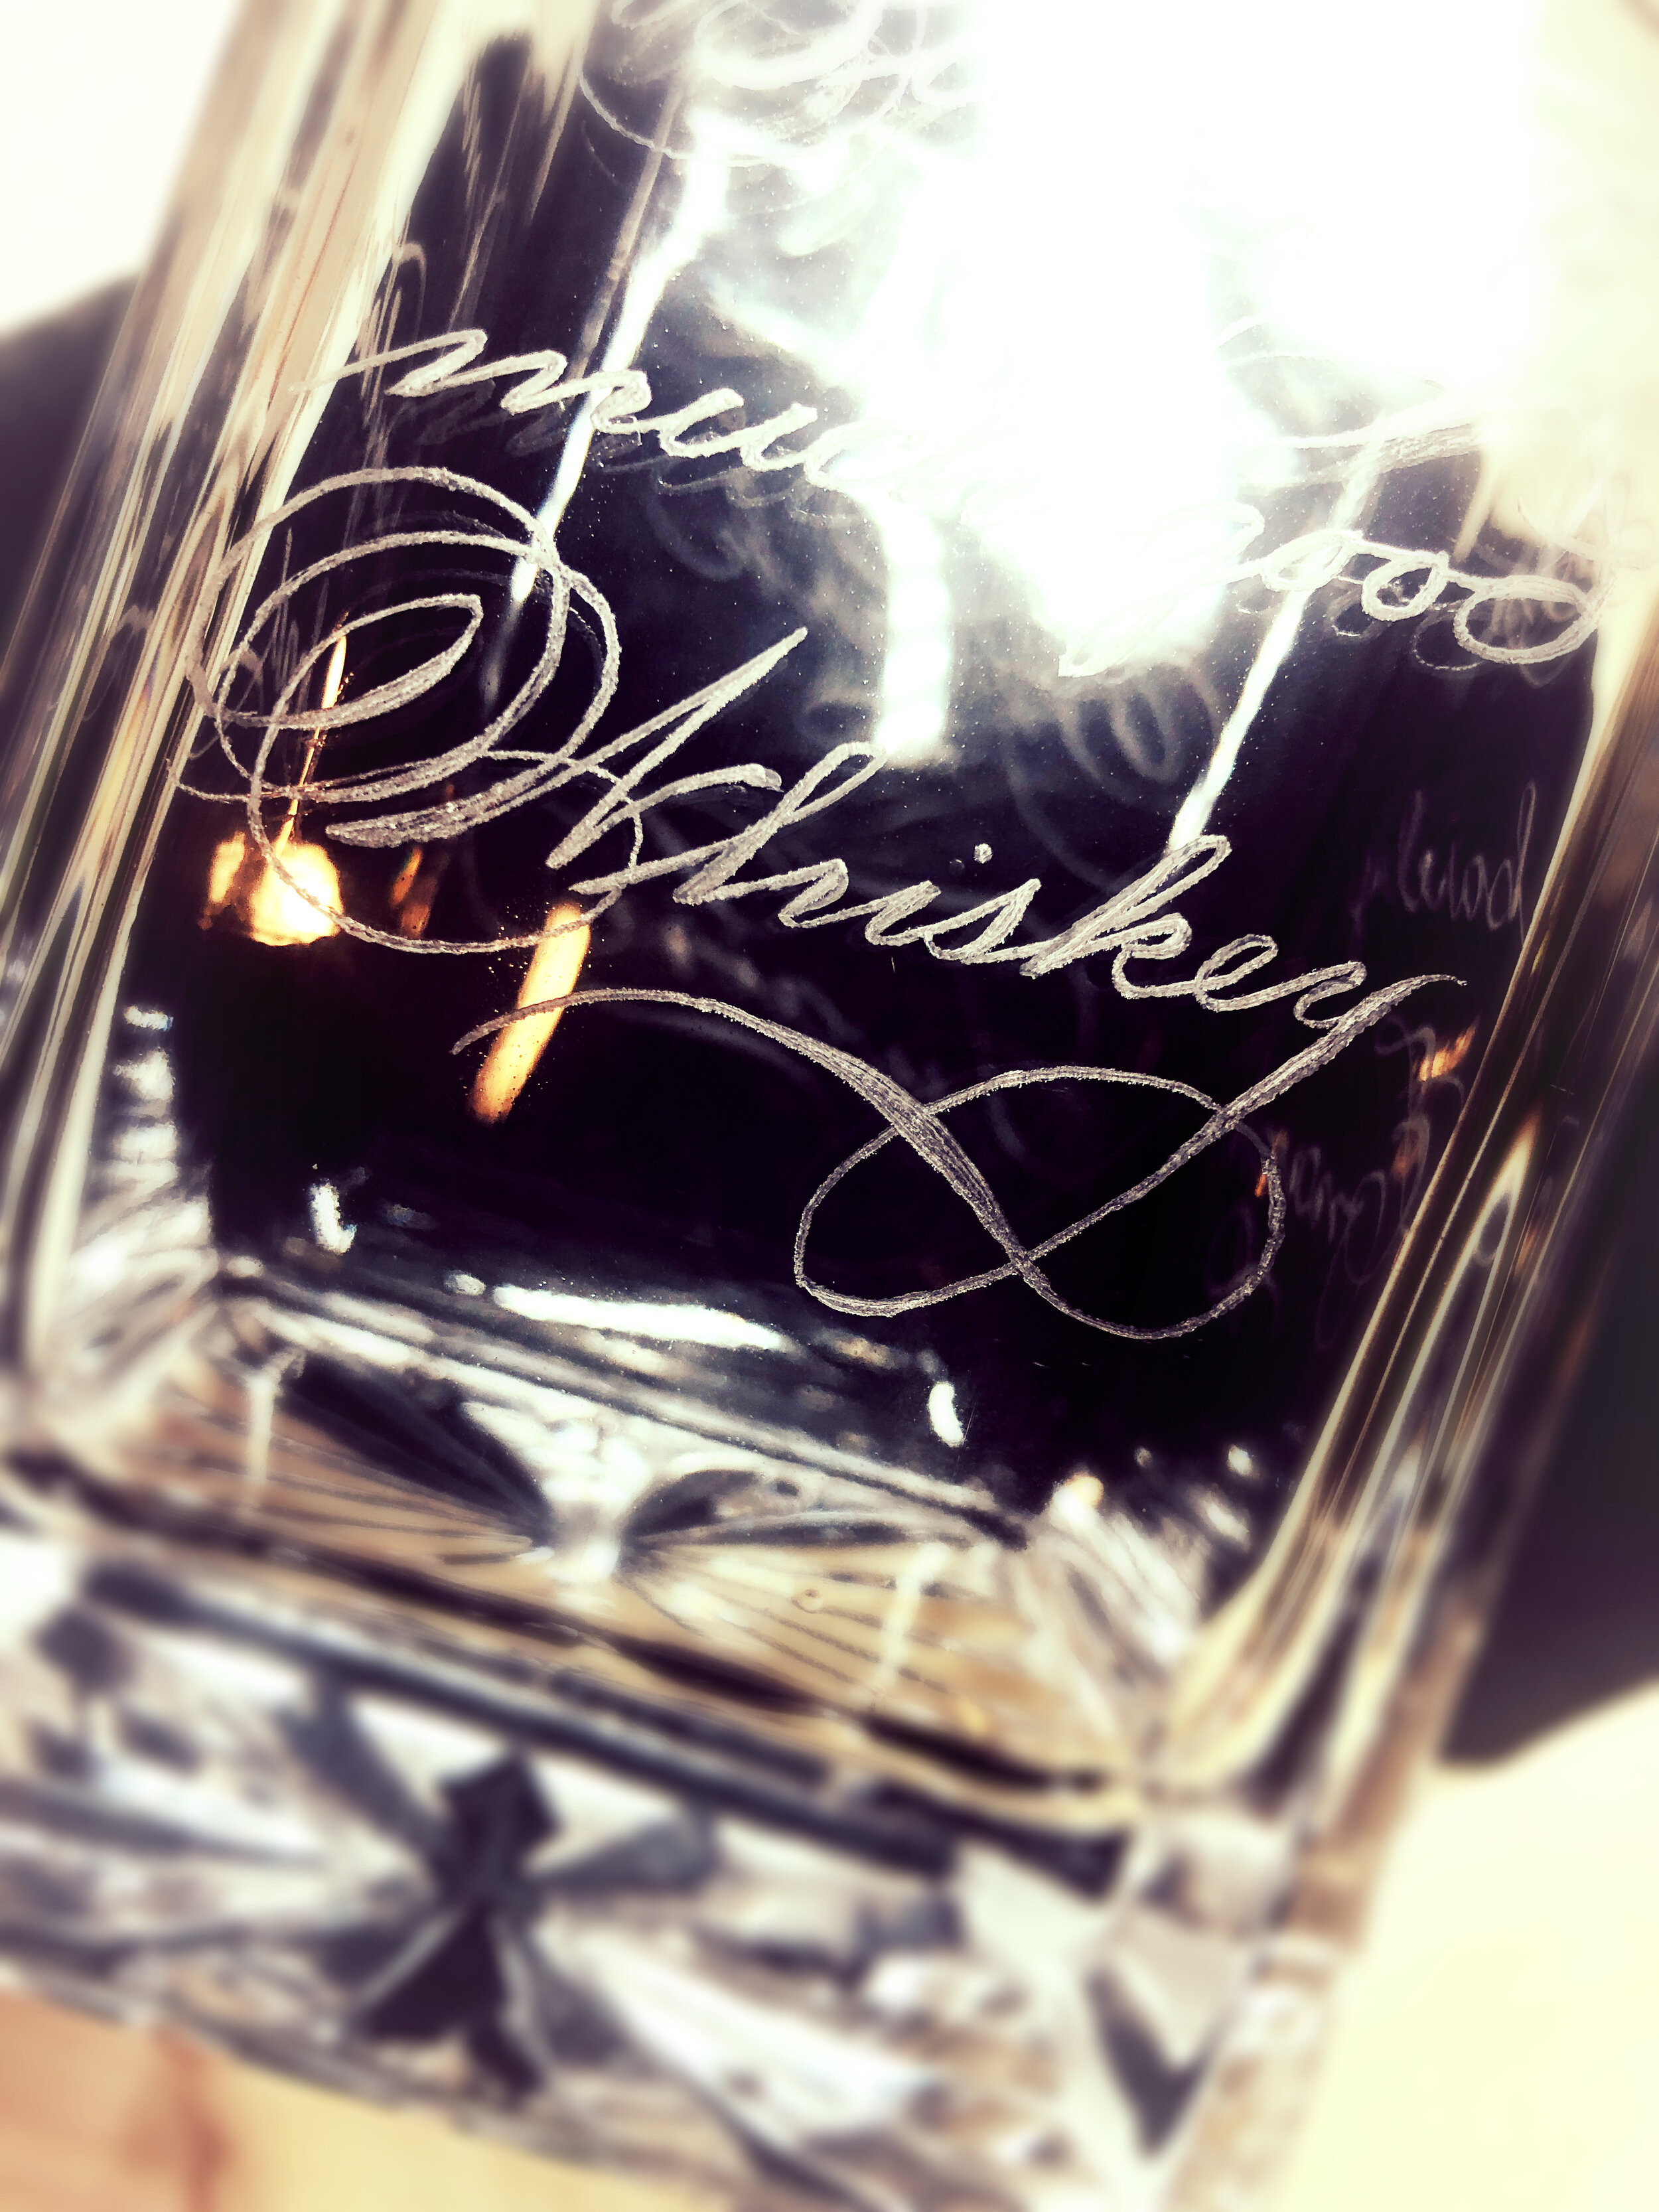 Whiskey wine bottle engraving houston (2).JPG